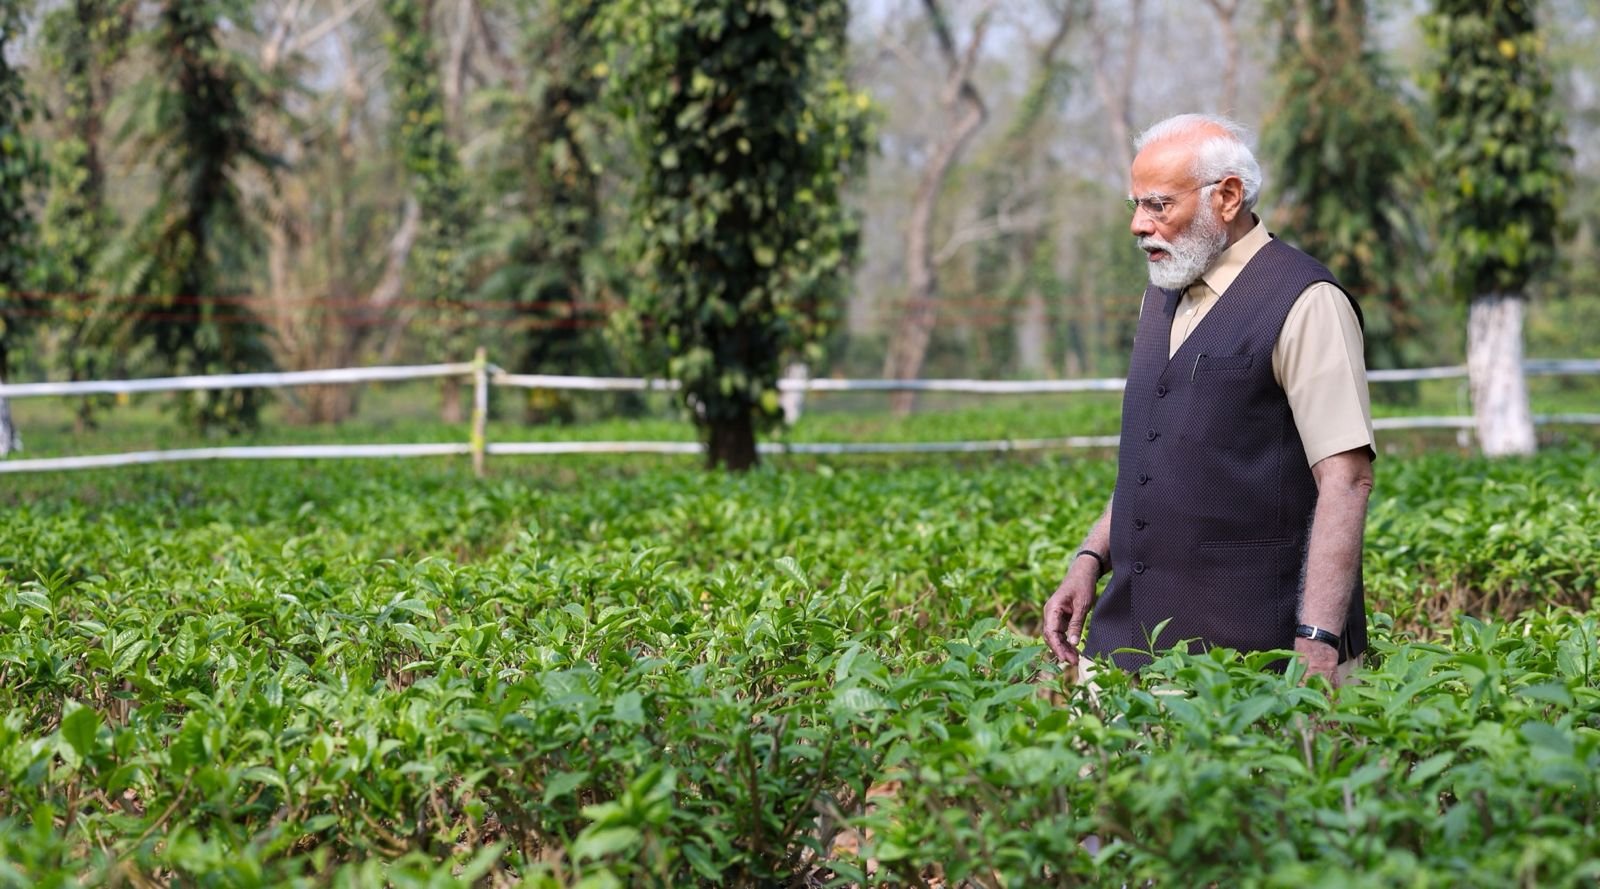 PM Modi spends time at tea garden in Assam